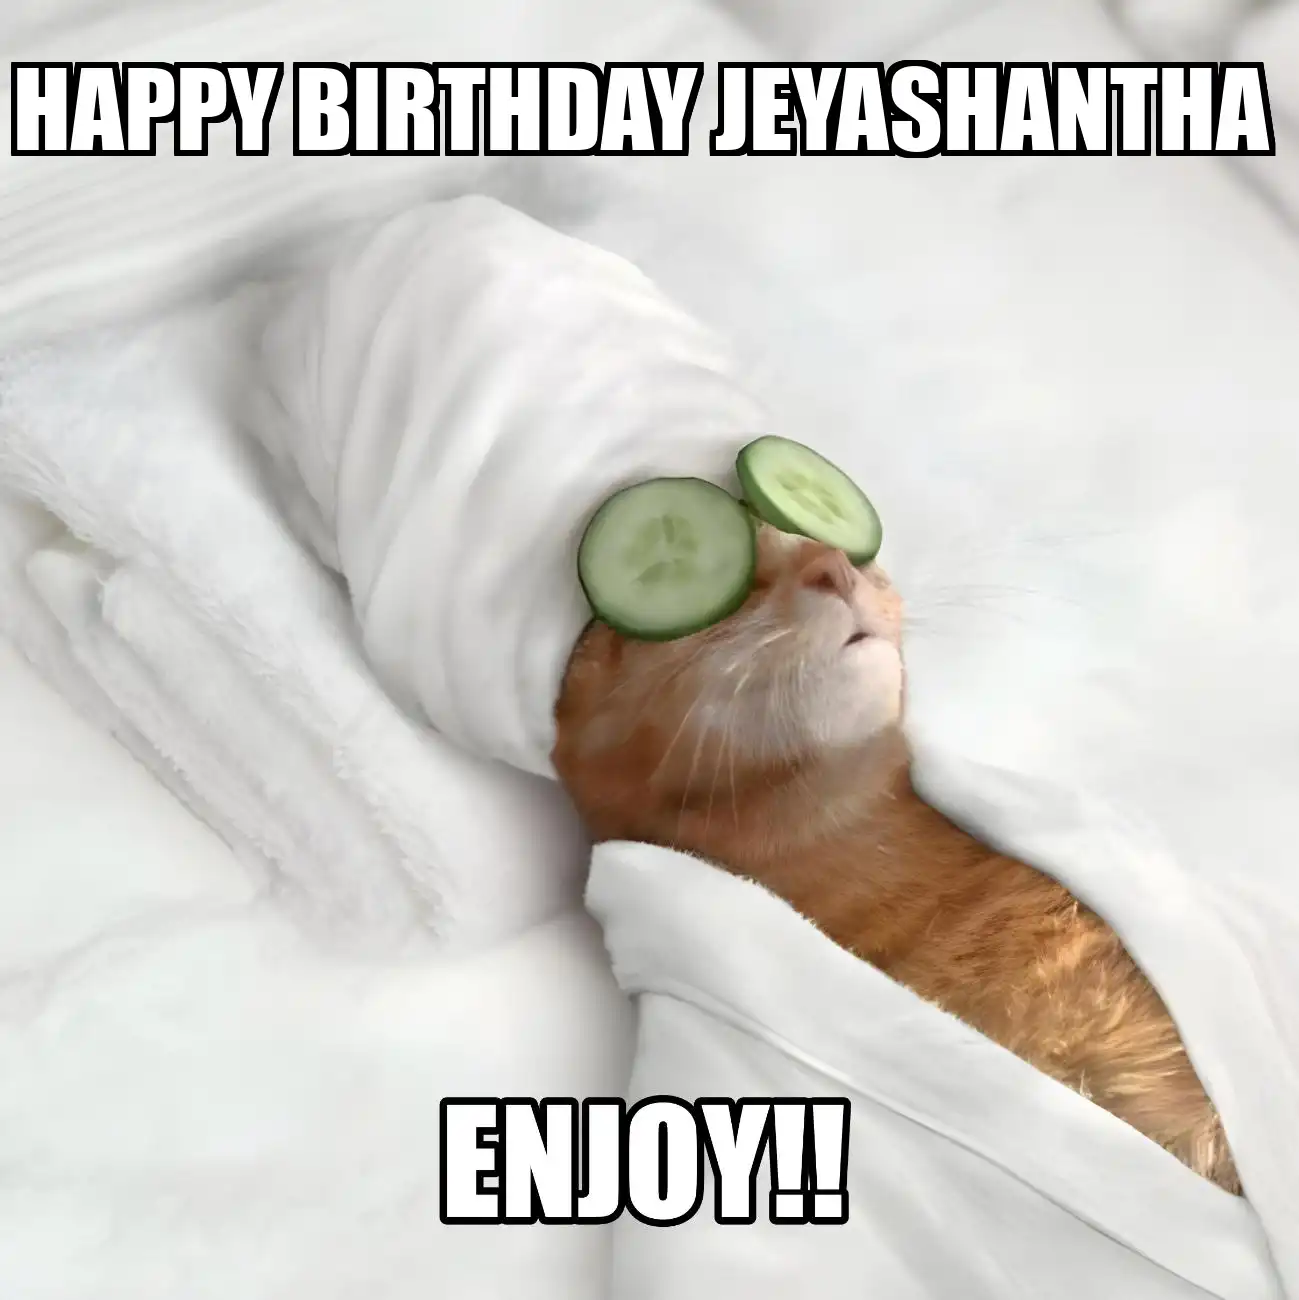 Happy Birthday Jeyashantha Enjoy Cat Meme